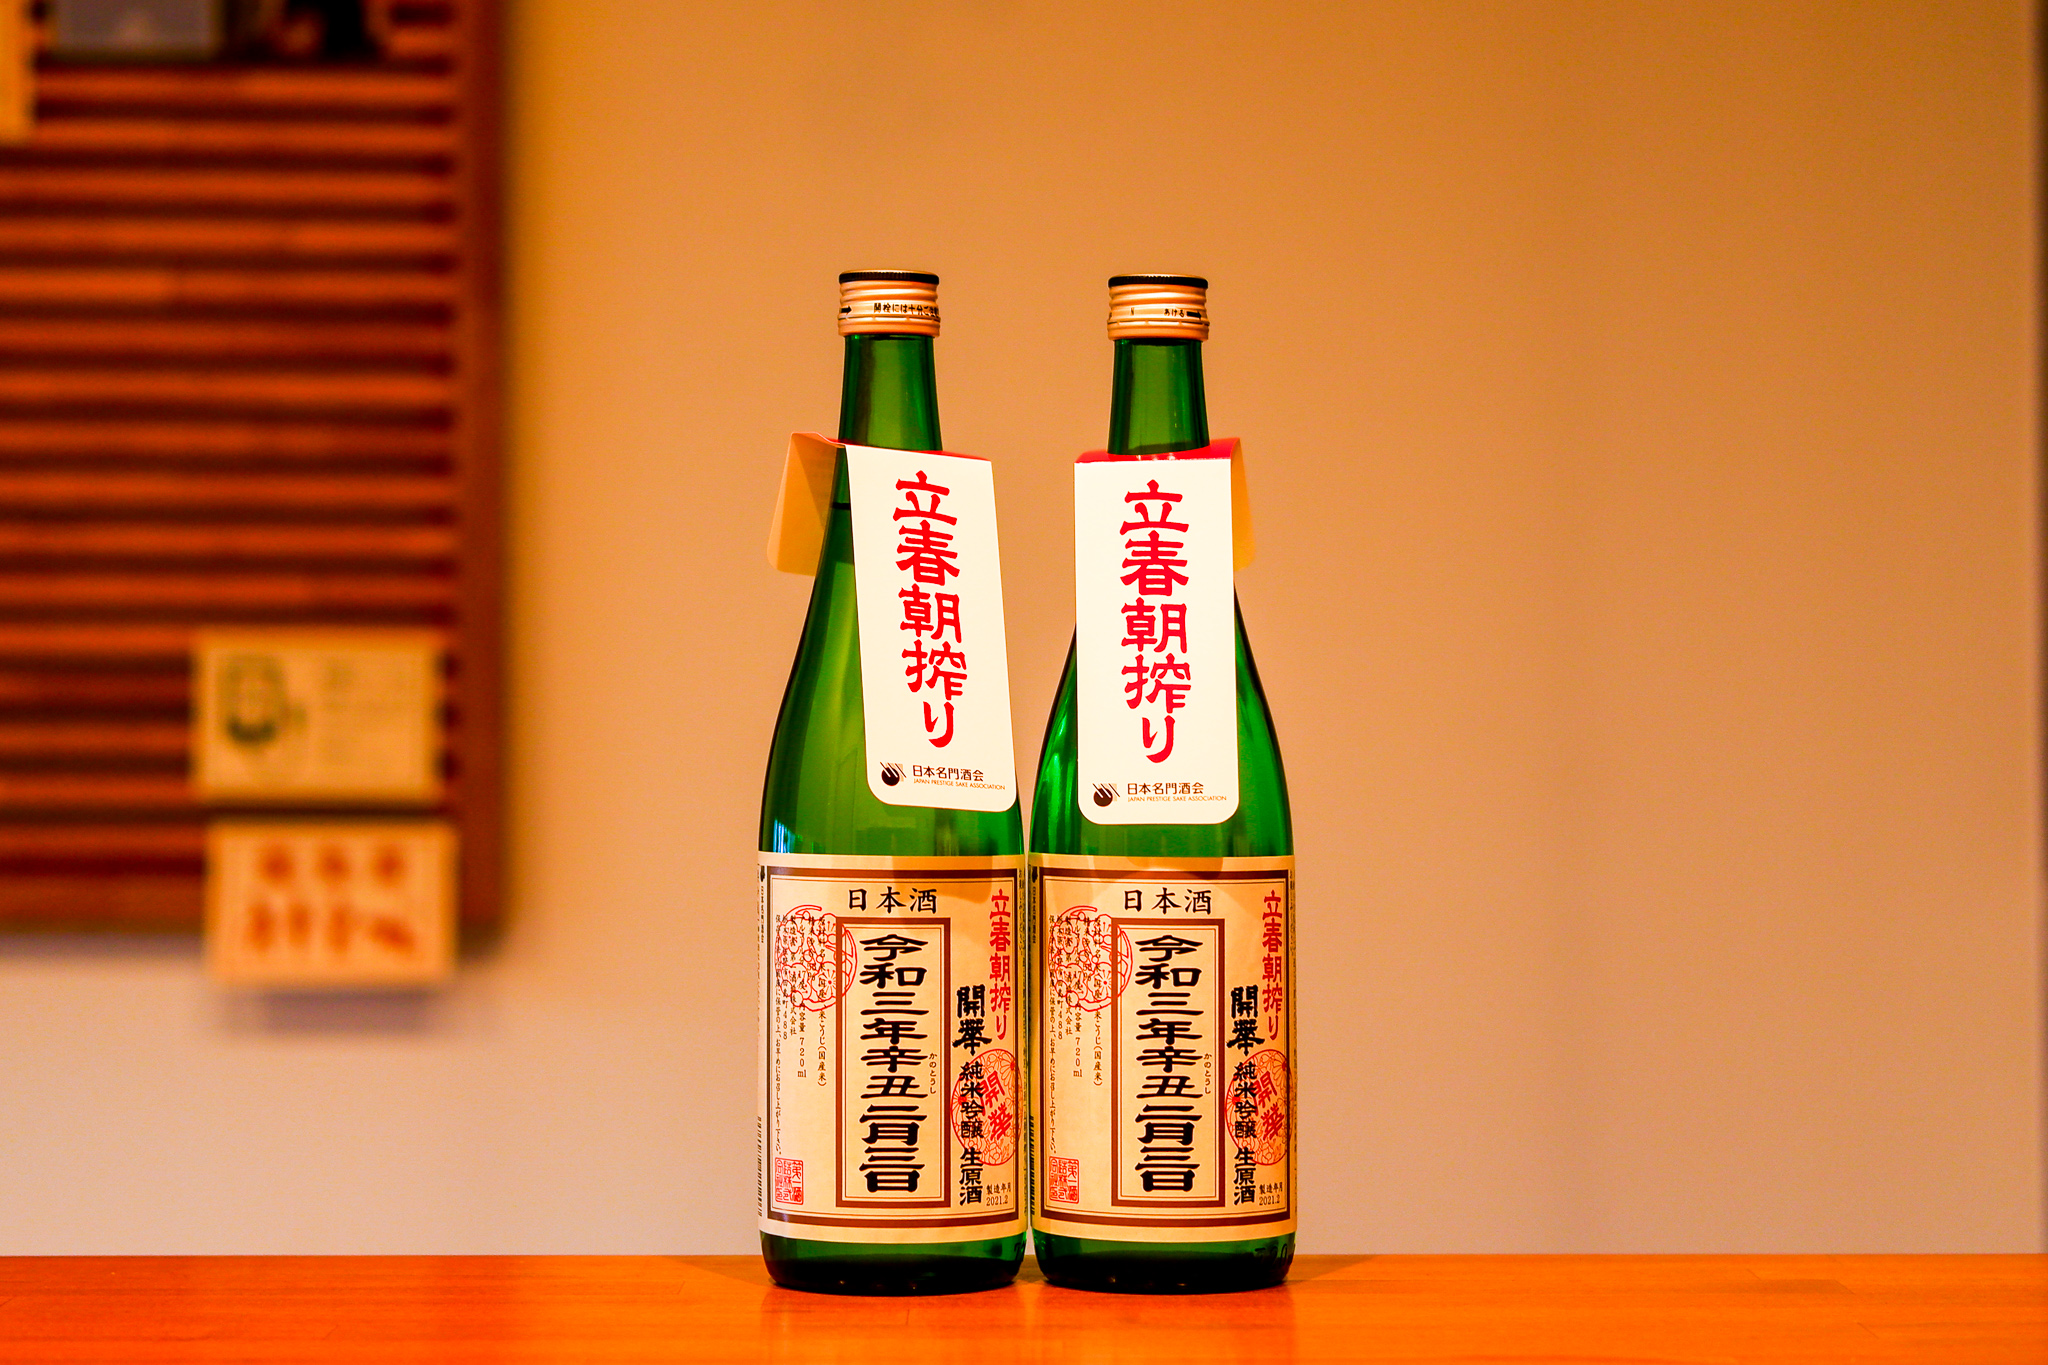 124年ぶりの2月3日の立春に搾られた開華 立春朝搾りという日本酒が発売